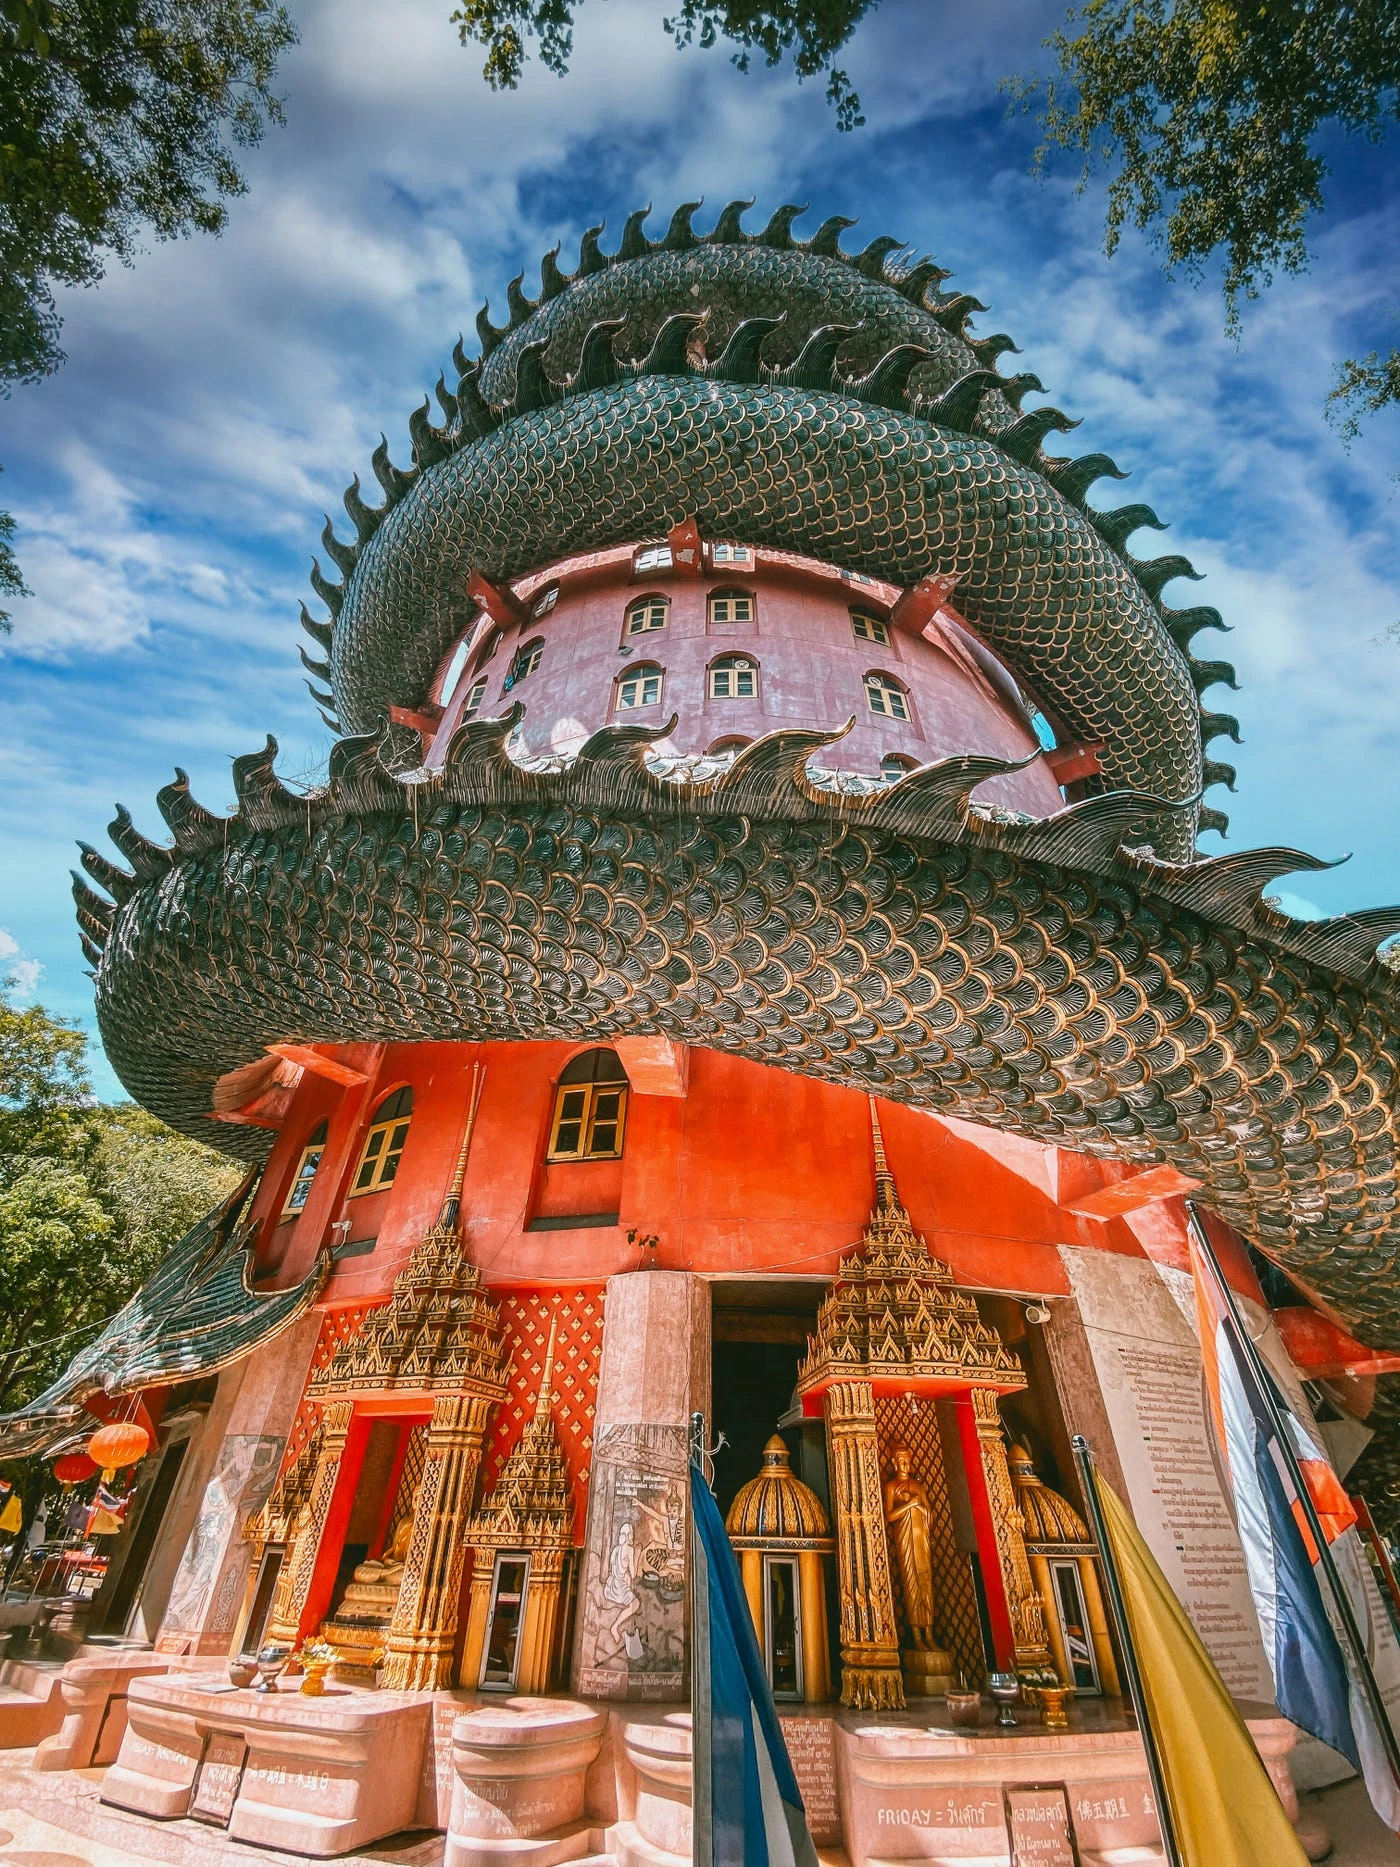 Khám phá rồng khổng lồ quấn quanh ngôi chùa hồng nổi tiếng ở Thái Lan